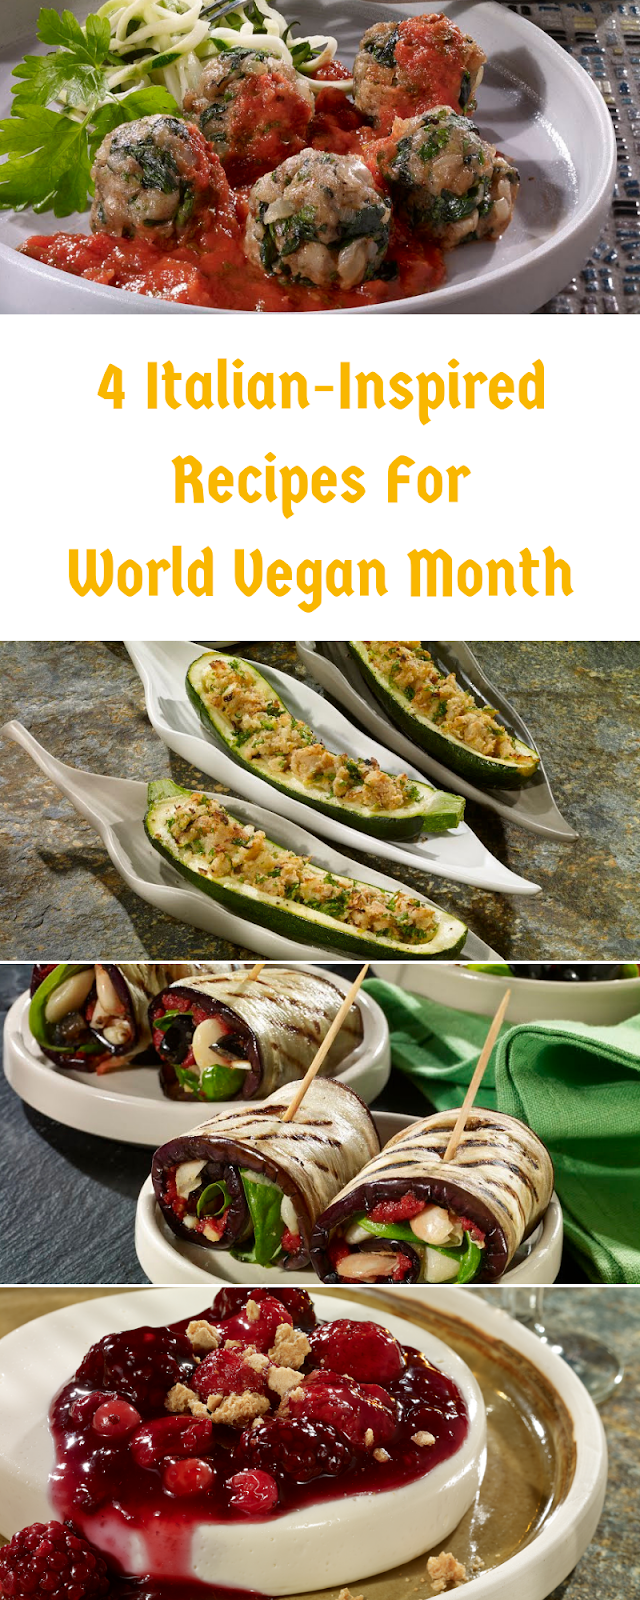 4 Italian-Inspired Recipes For World Vegan Month